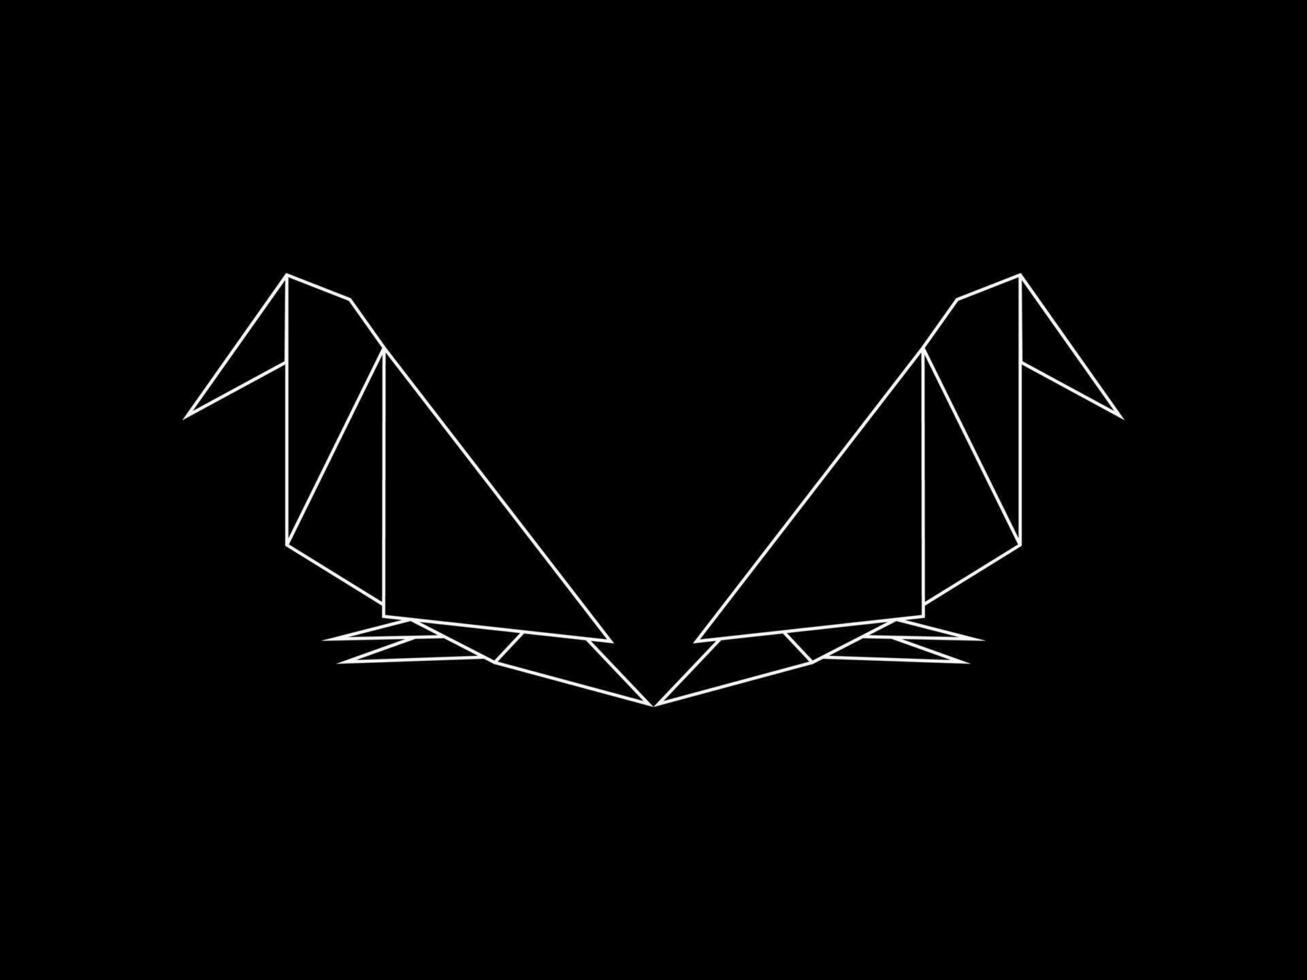 paar- van de vogel veelhoekige illustratie voor logo of grafisch ontwerp element. vector illustratie